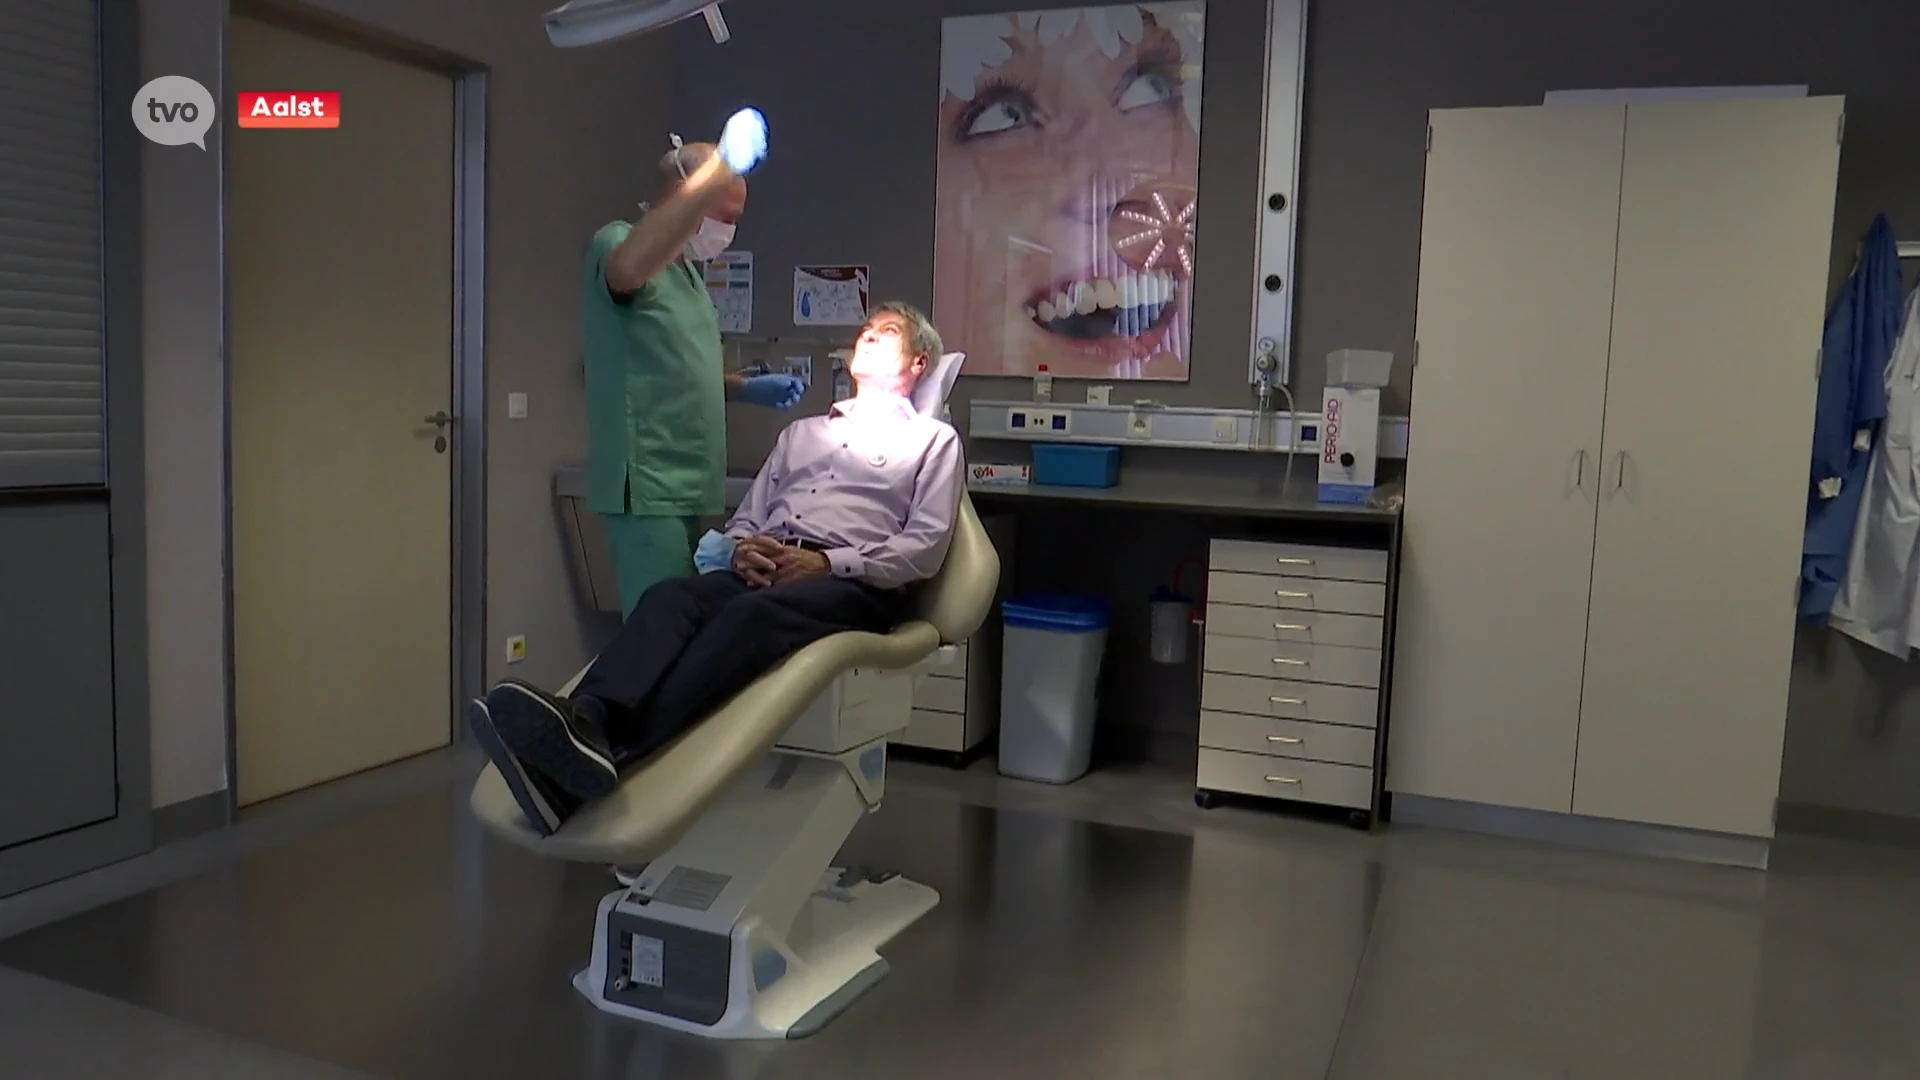 OLV Aalst vraagt mensen om jaarlijks naar de tandarts te gaan om zo hoofd- en halskankers vroeg op te sporen